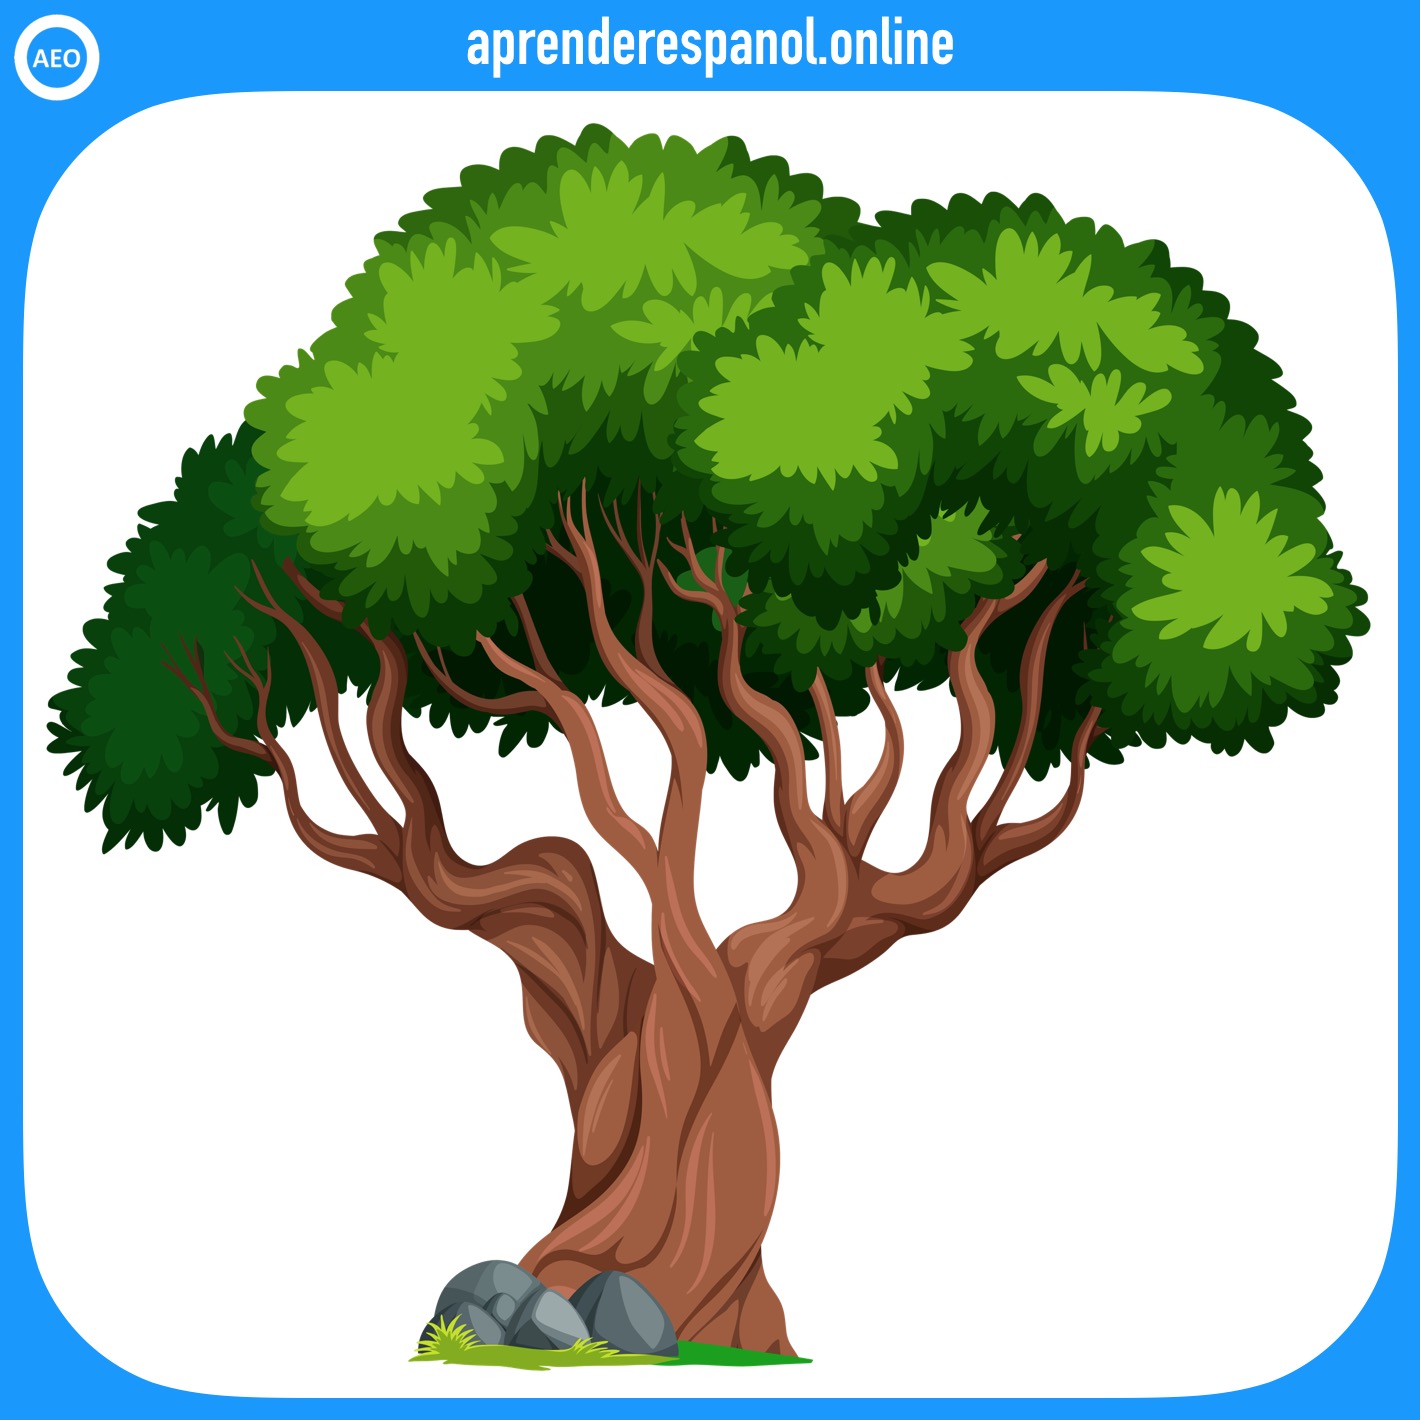 Ejemplo de colores: El árbol tiene hojas de color verde - Vocabulario de colores